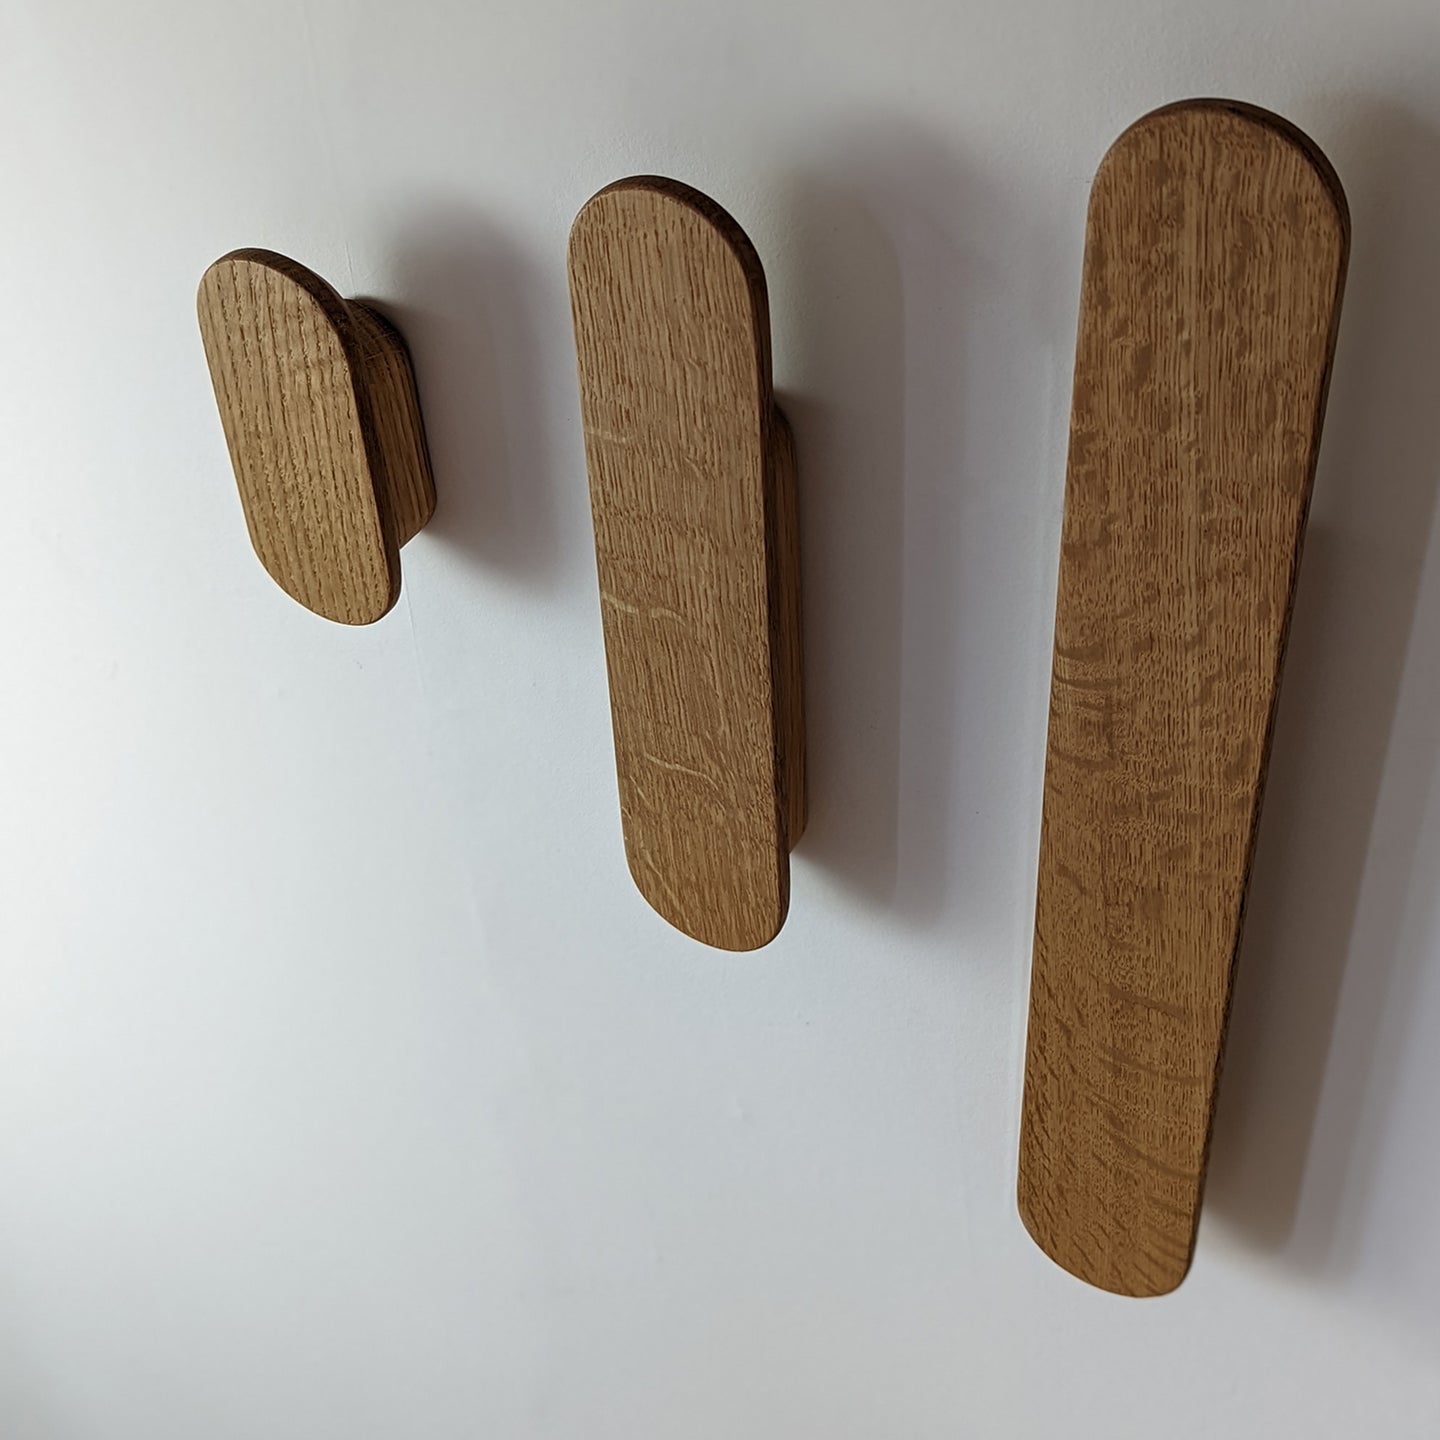 Wood Wall Hooks & Shelves